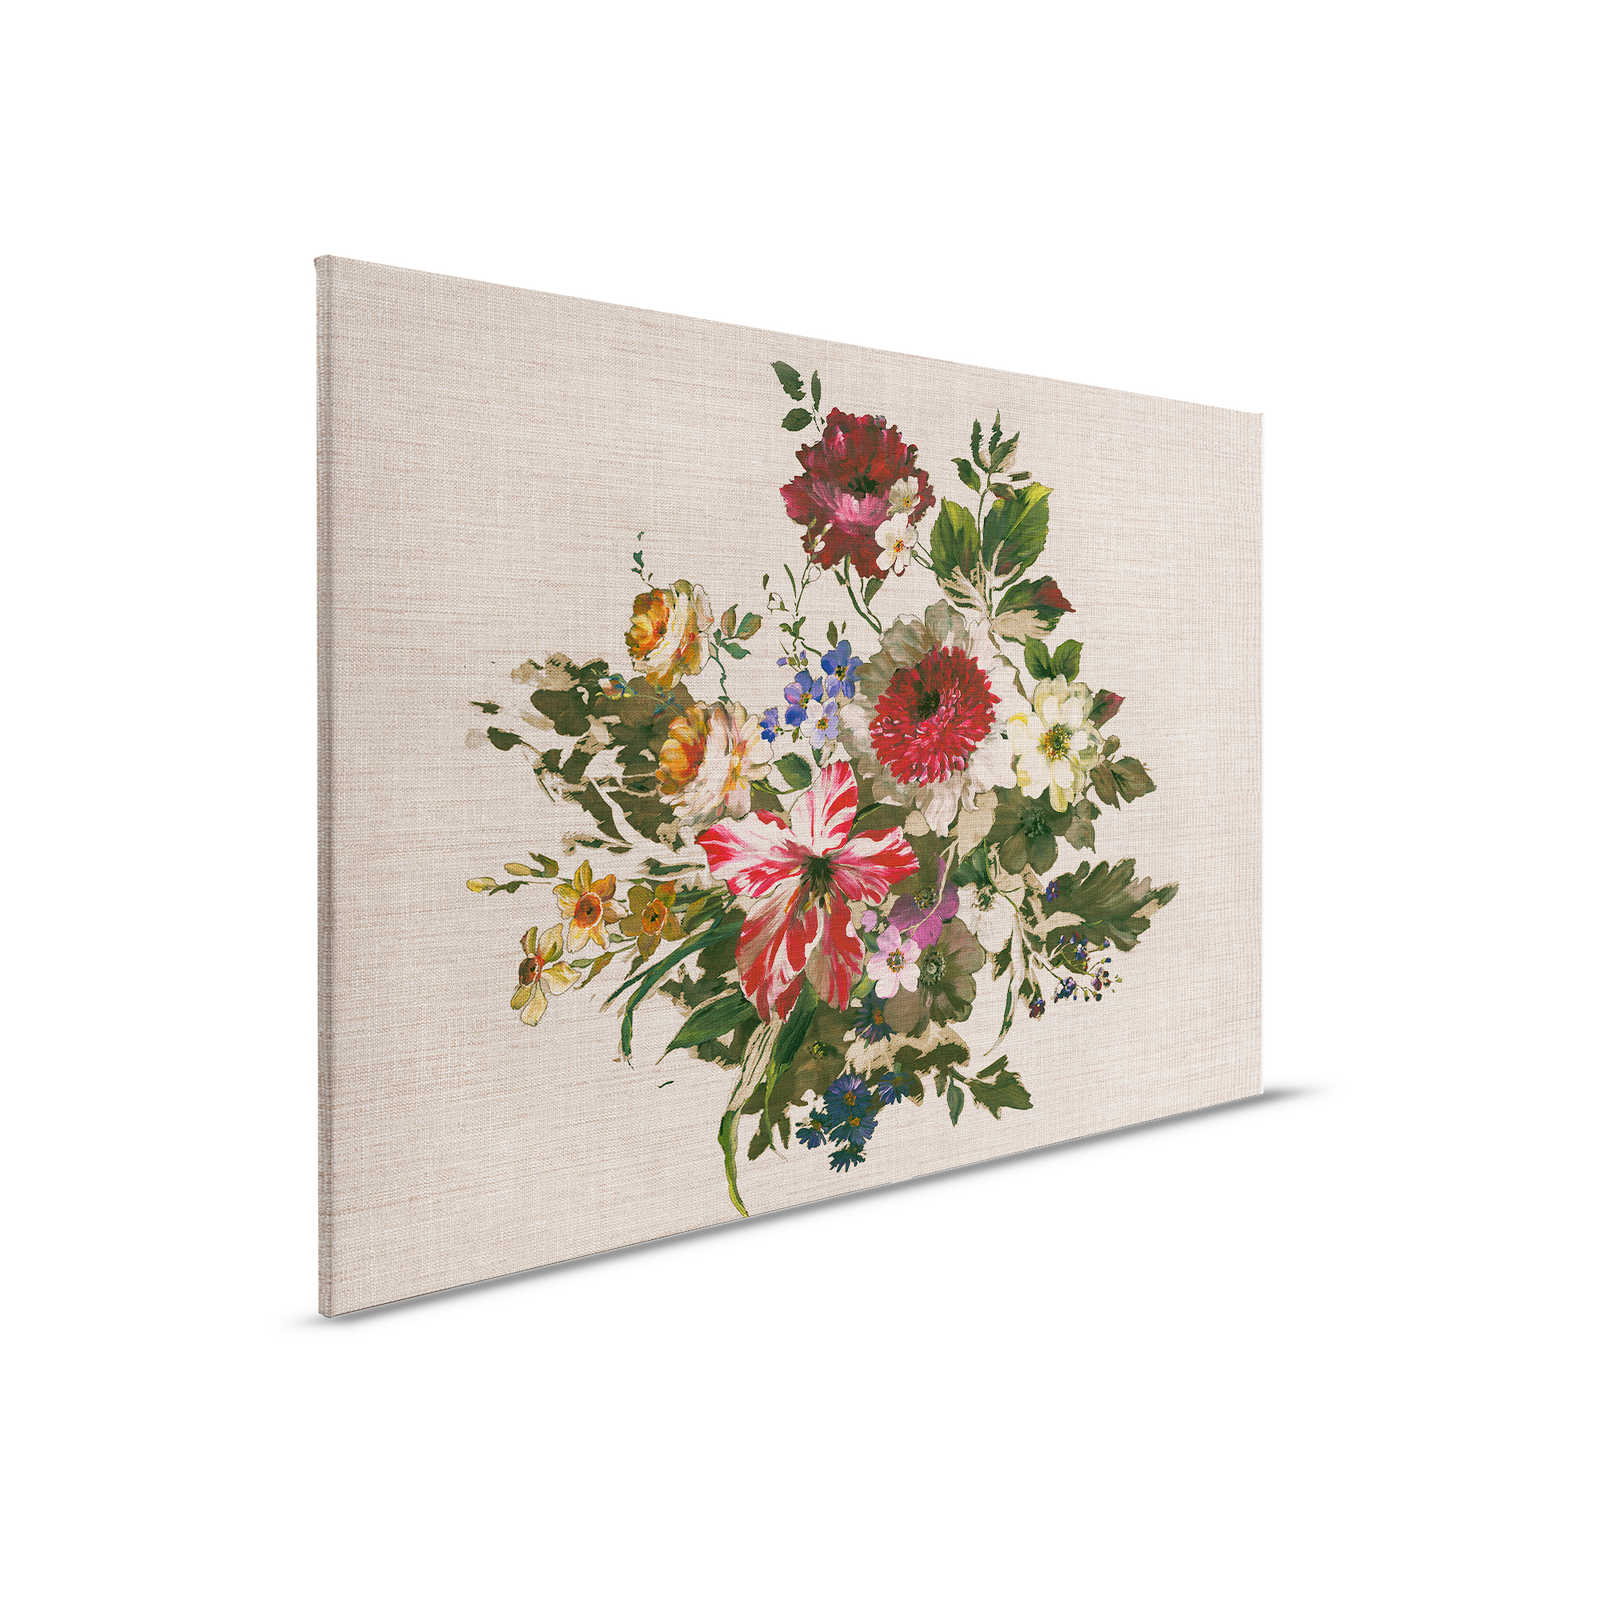 Canvas schilderij beschilderde bloemen vintage stijl & linnen look - 0,90 m x 0,60 m
